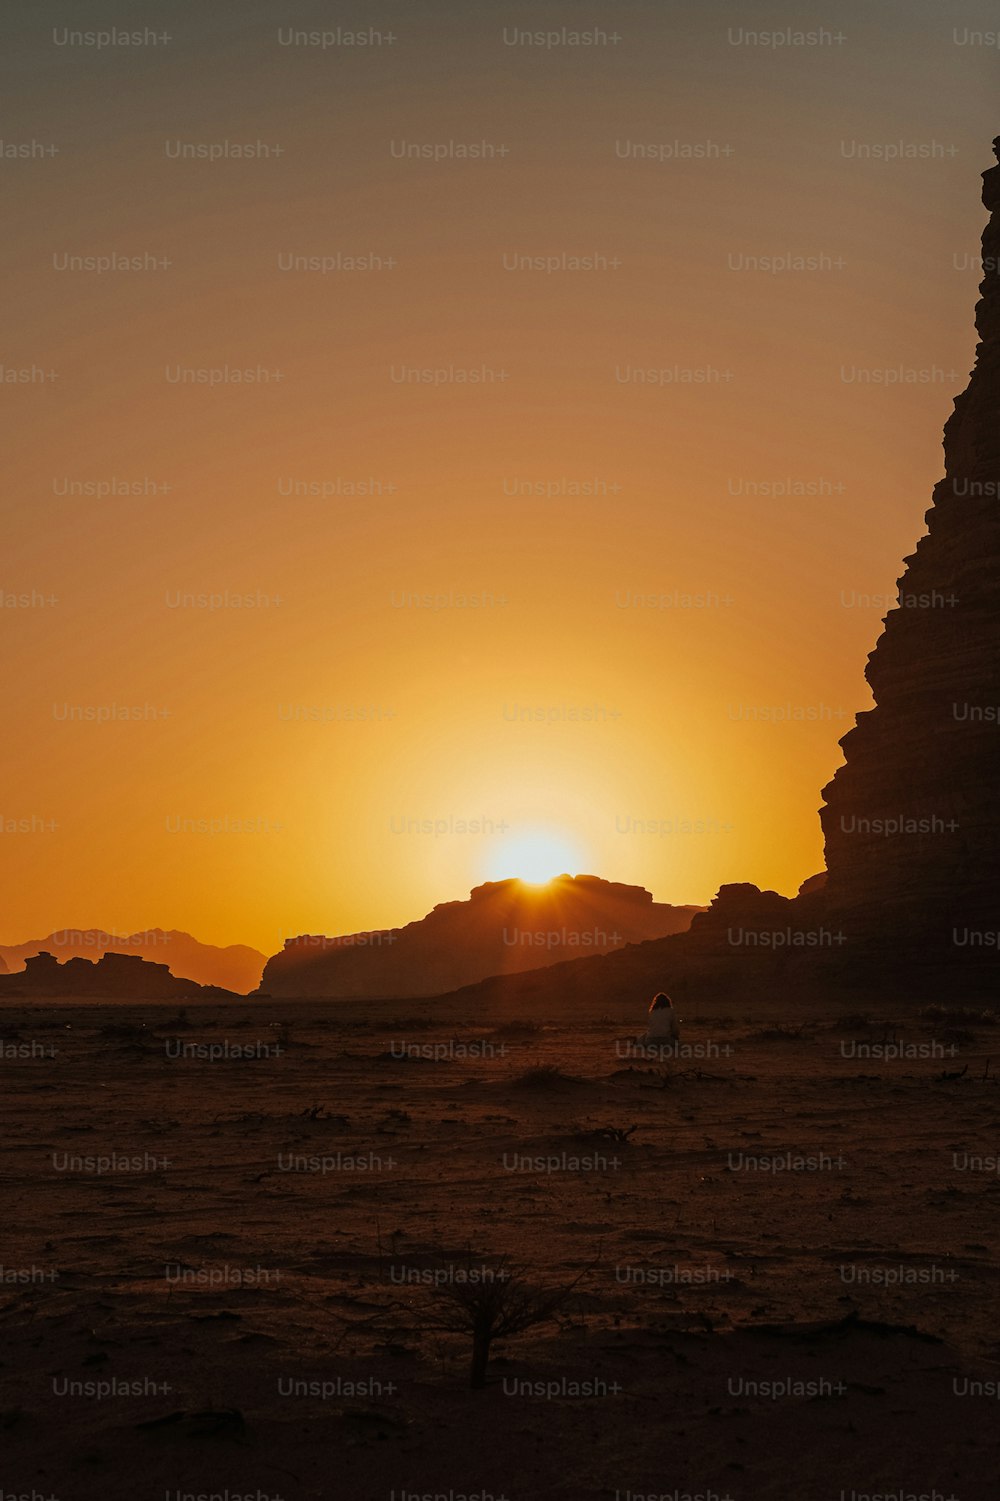 Le soleil se couche derrière une pyramide dans le désert